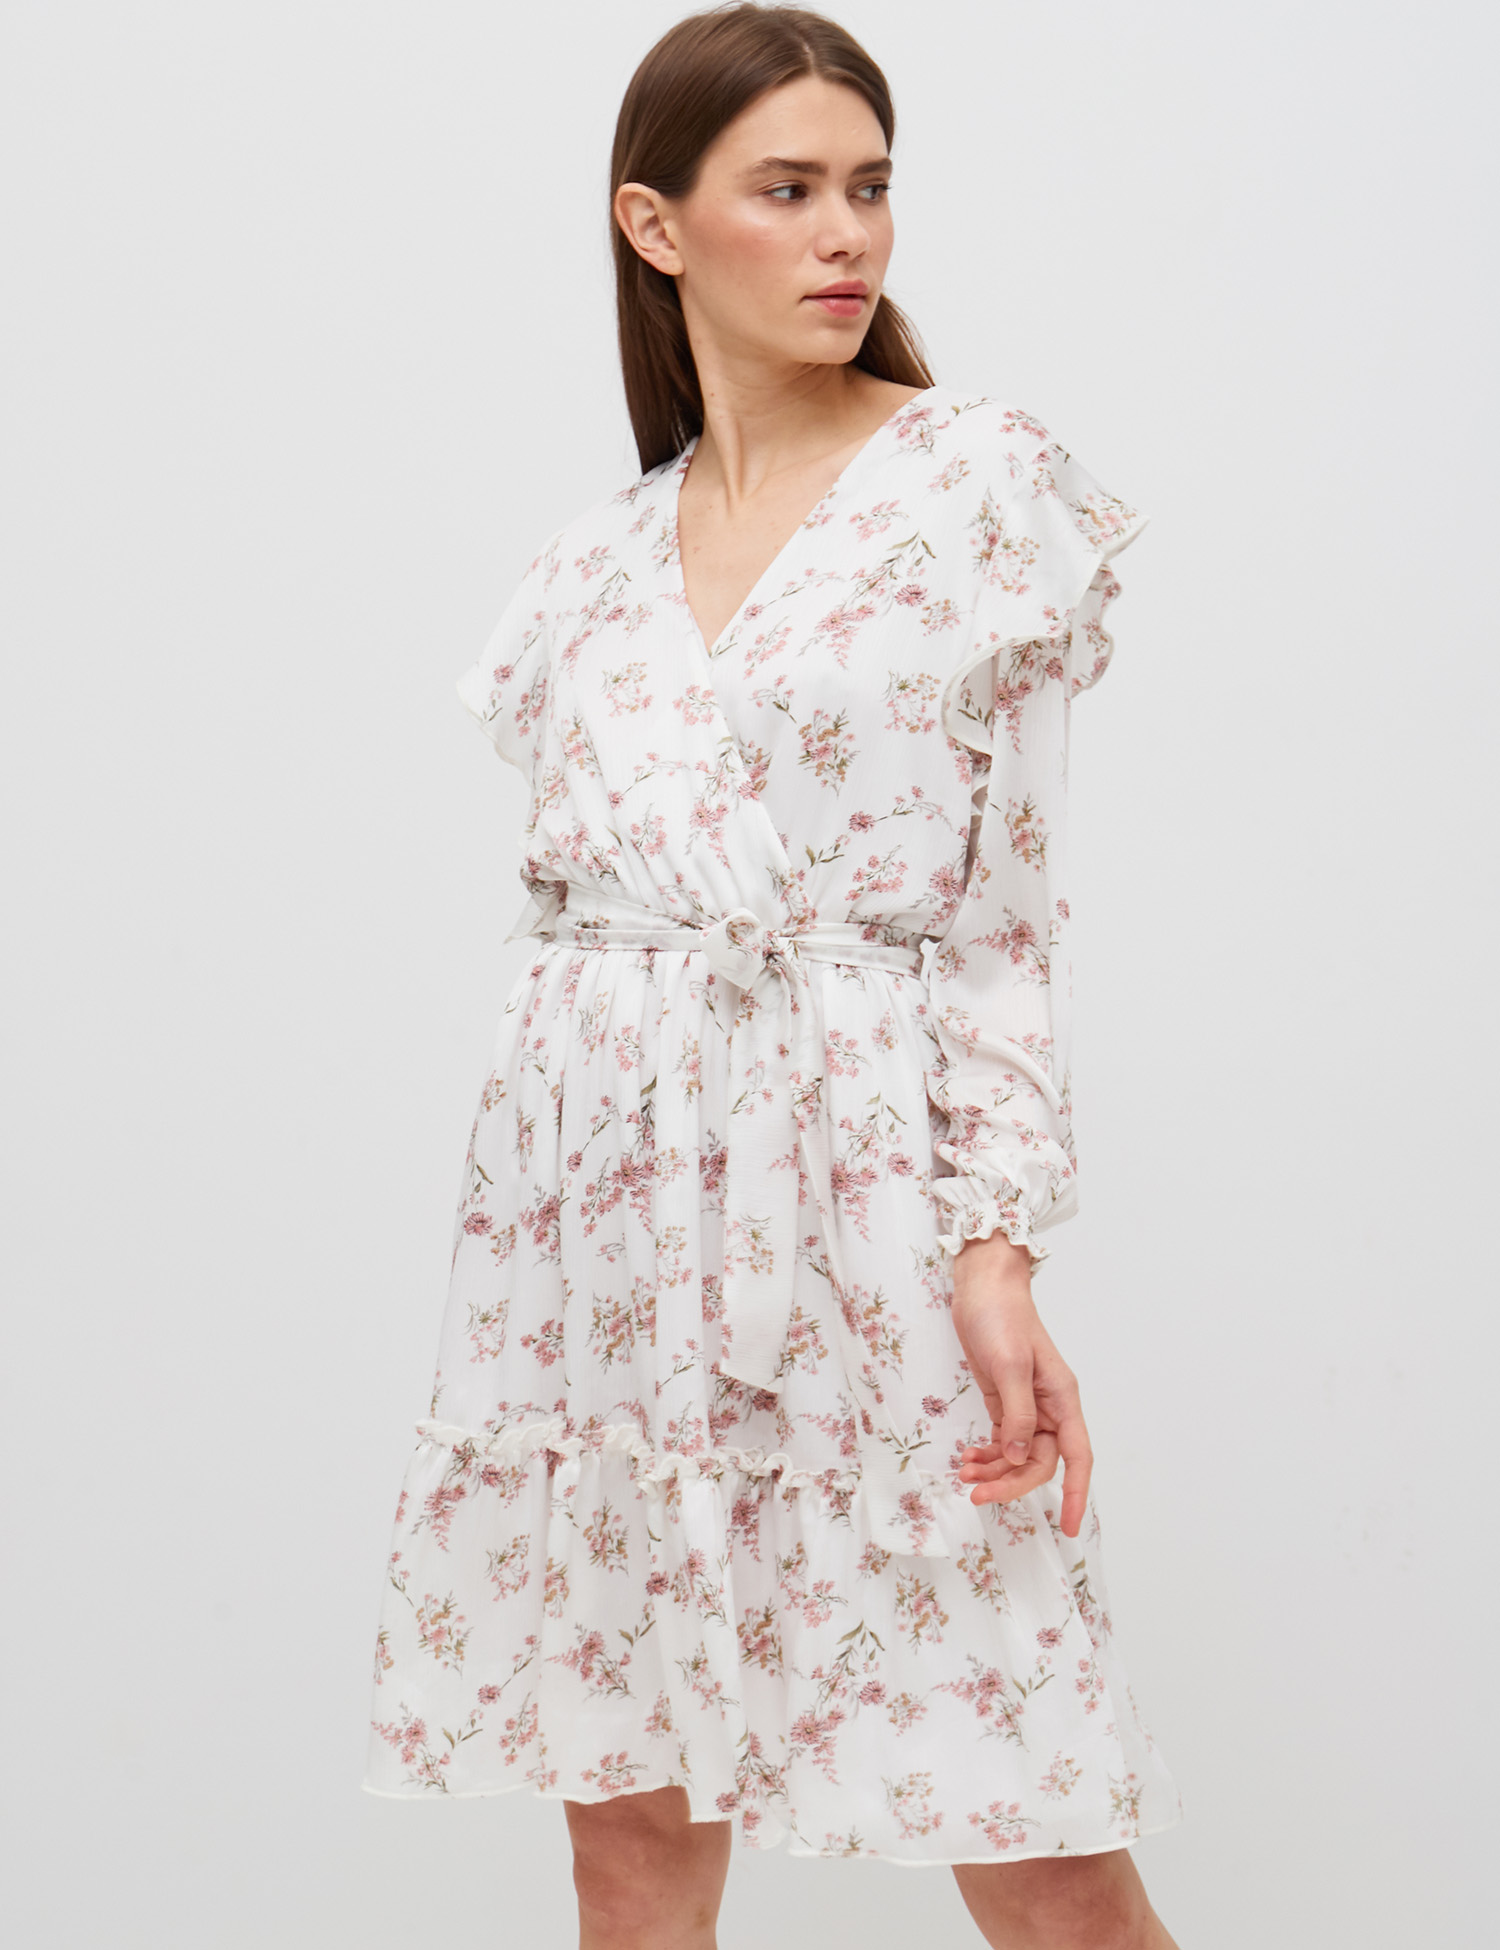 Картинка Біла сукня з рослинним візерунком